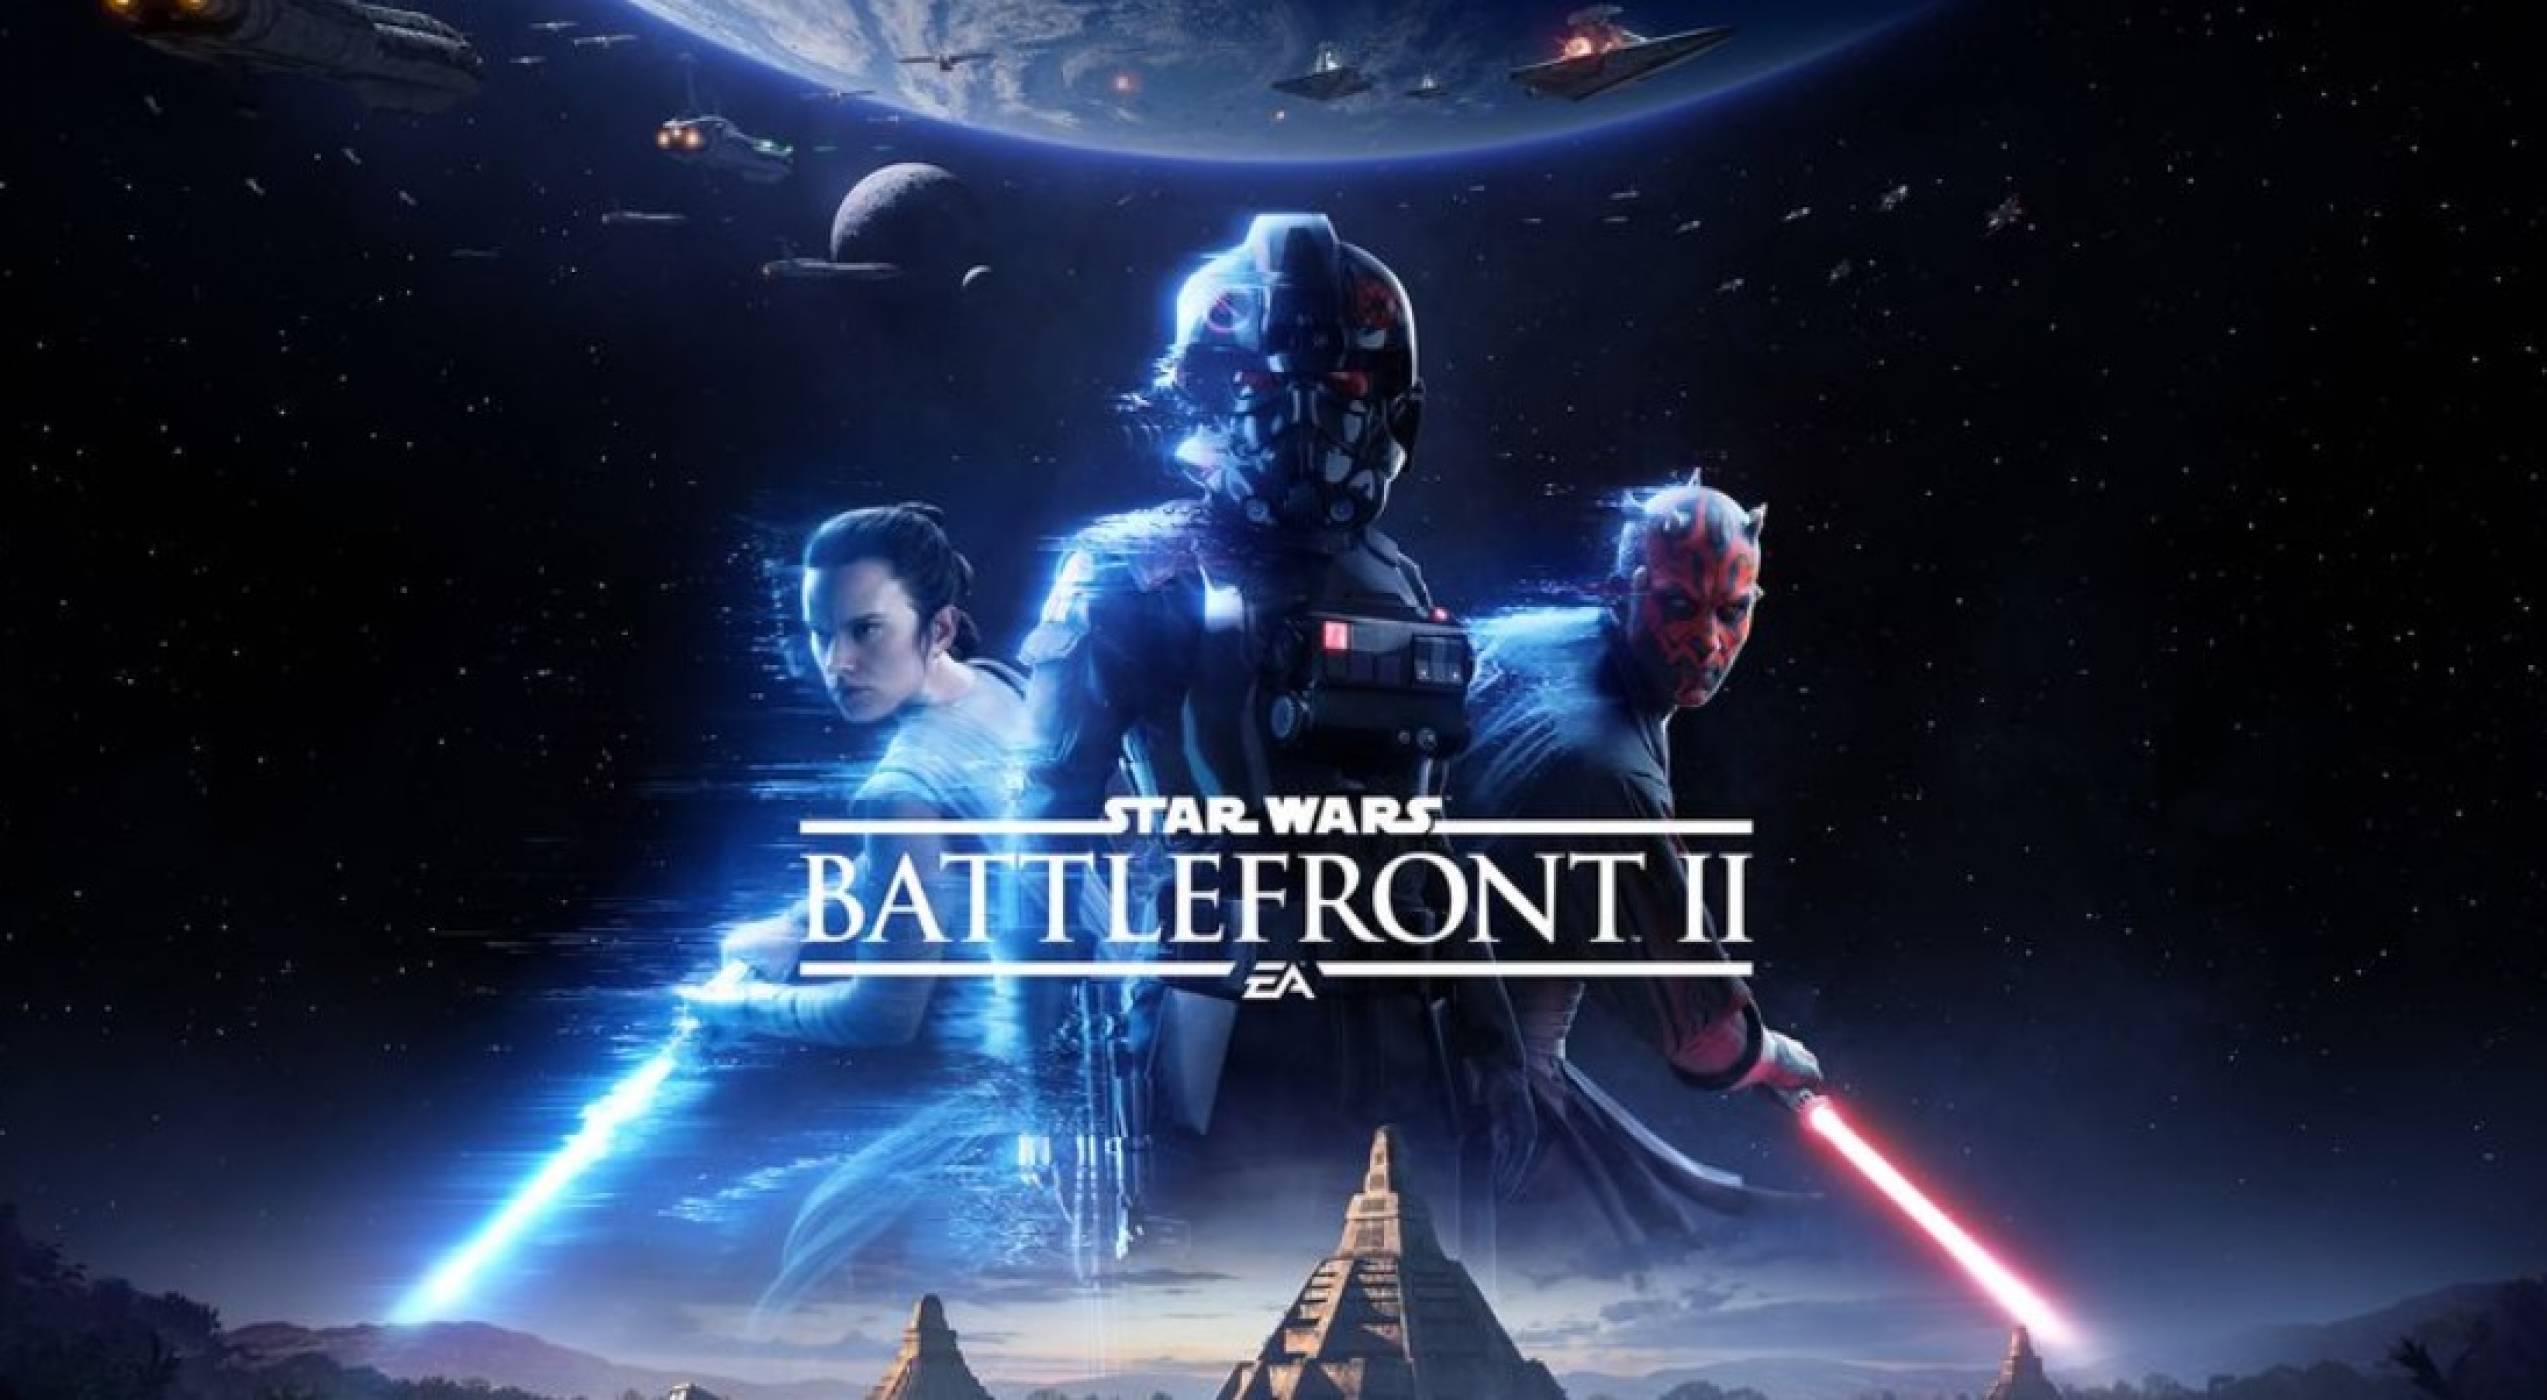 Star Wars: Battlefront II се очертава като играта, която феновете на сагата чакат